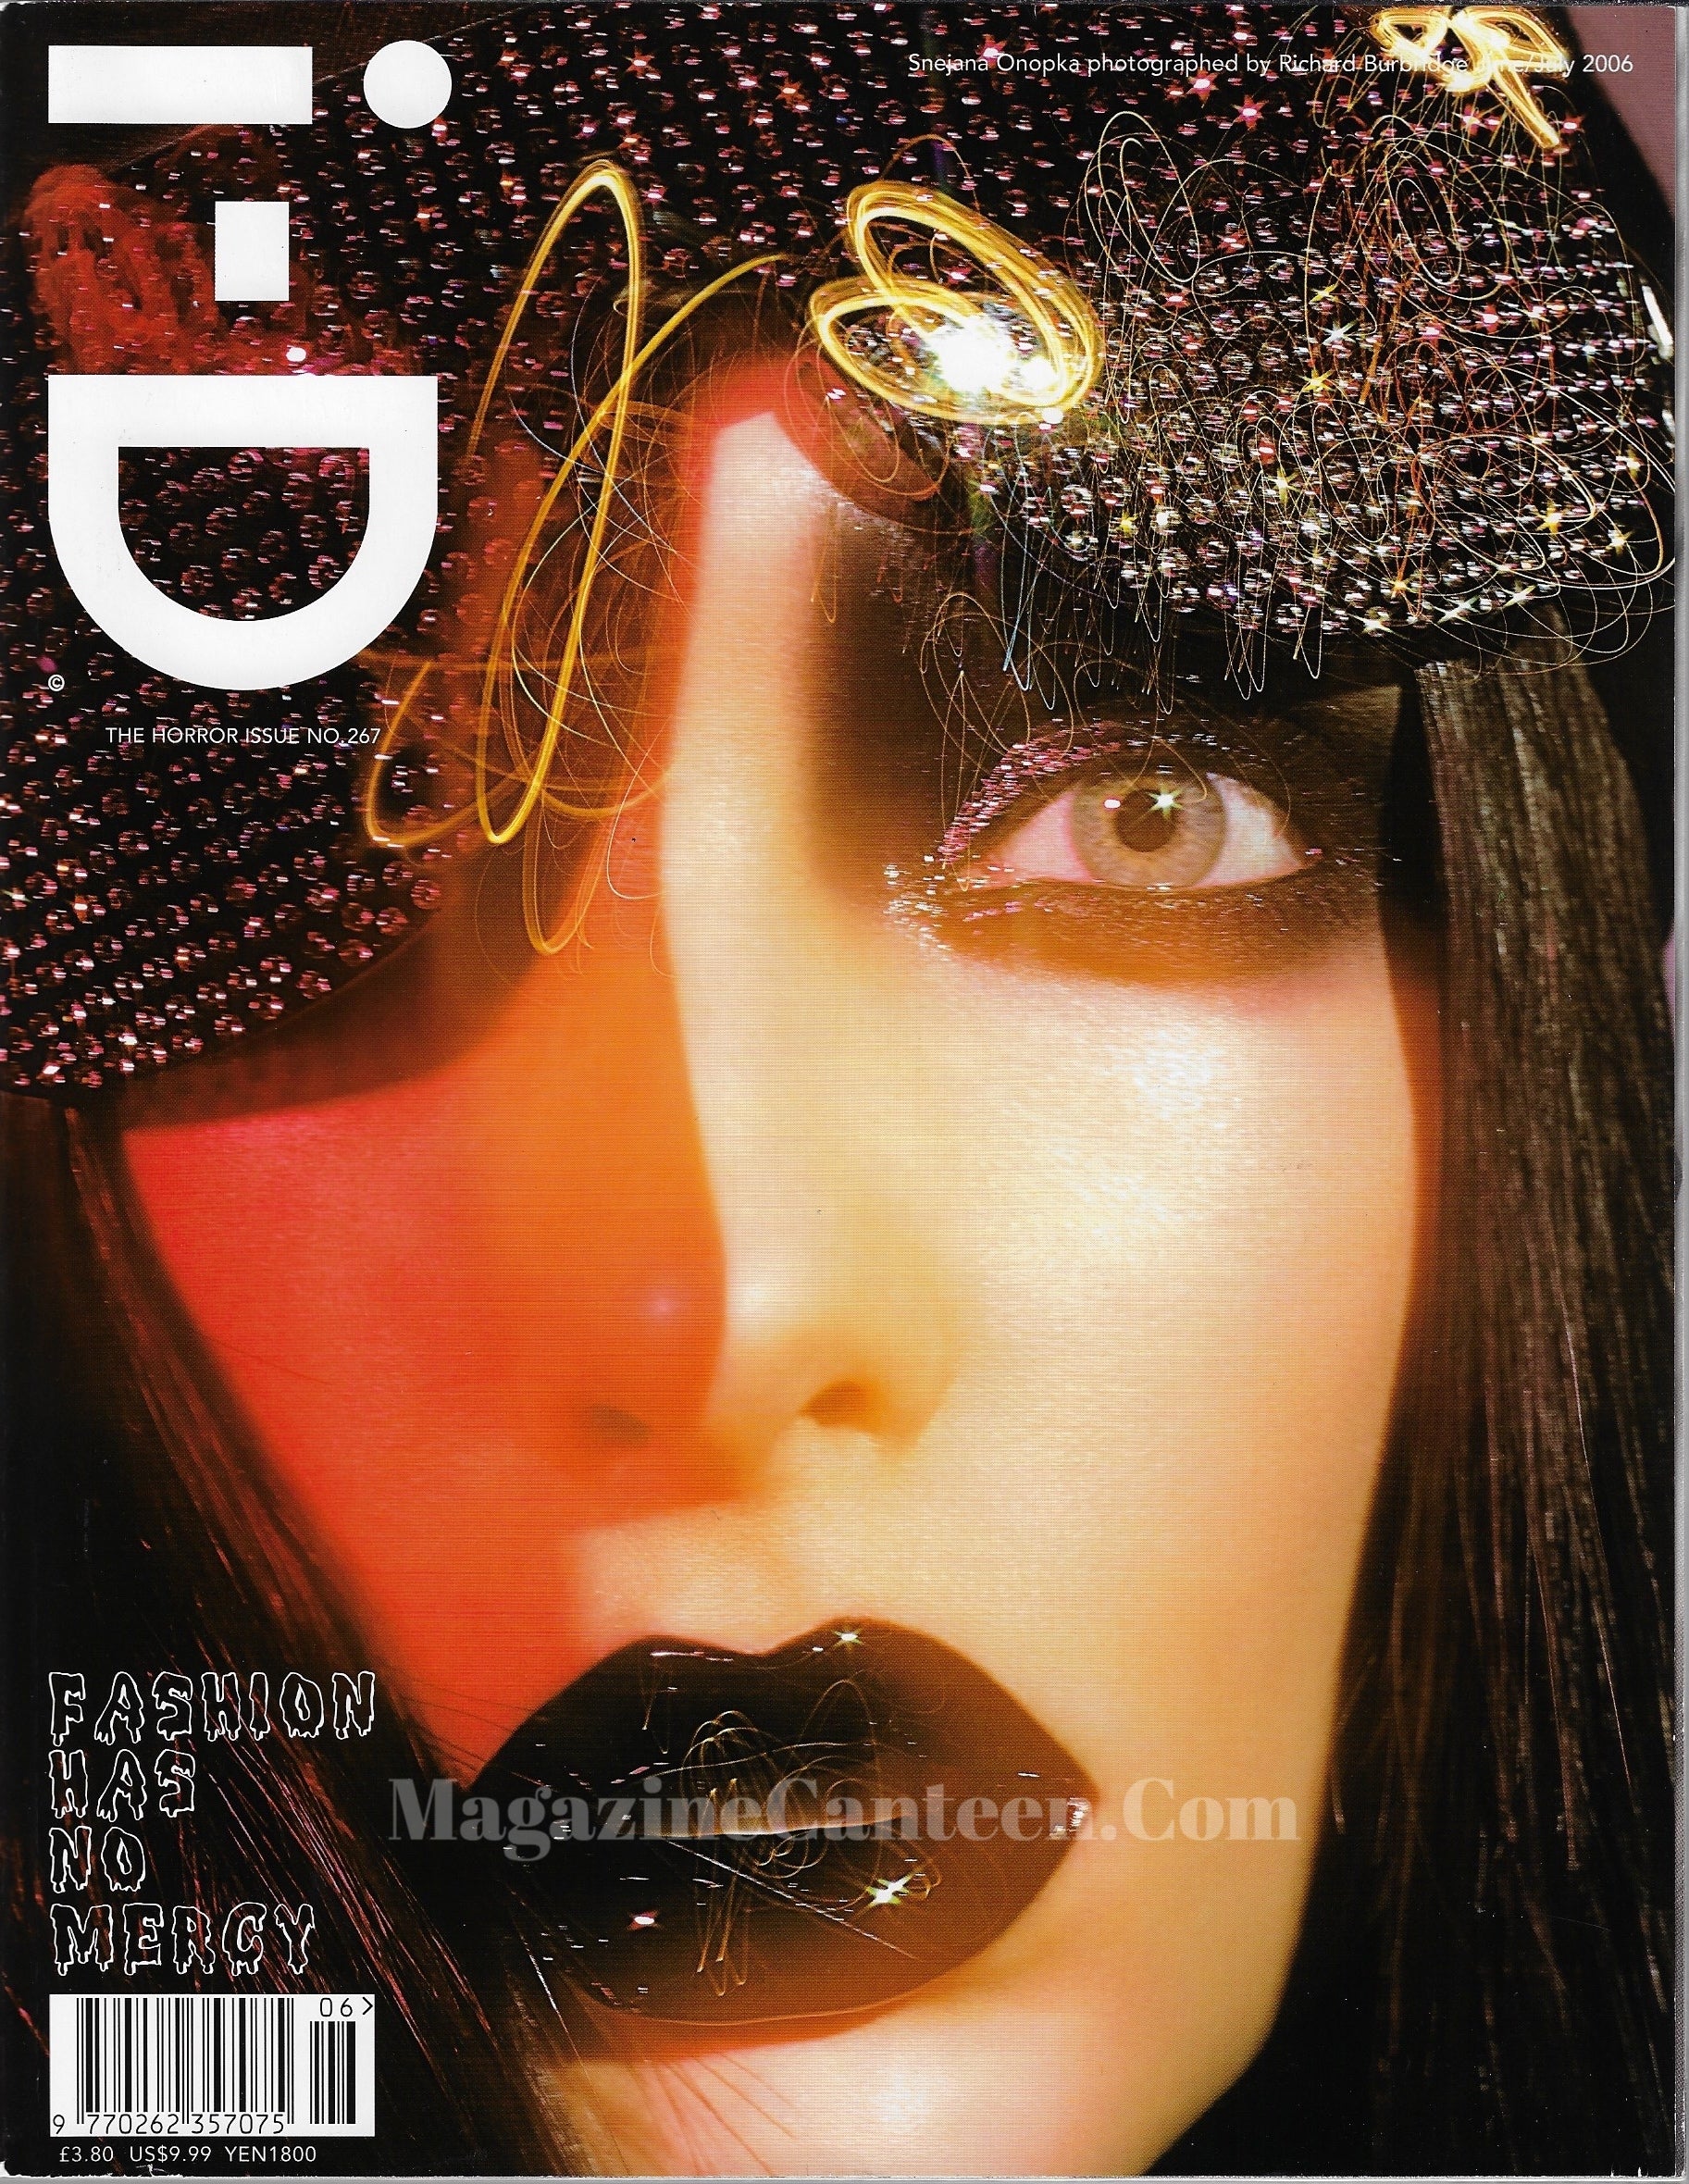 I-D Magazine 267 - Snejana 2006